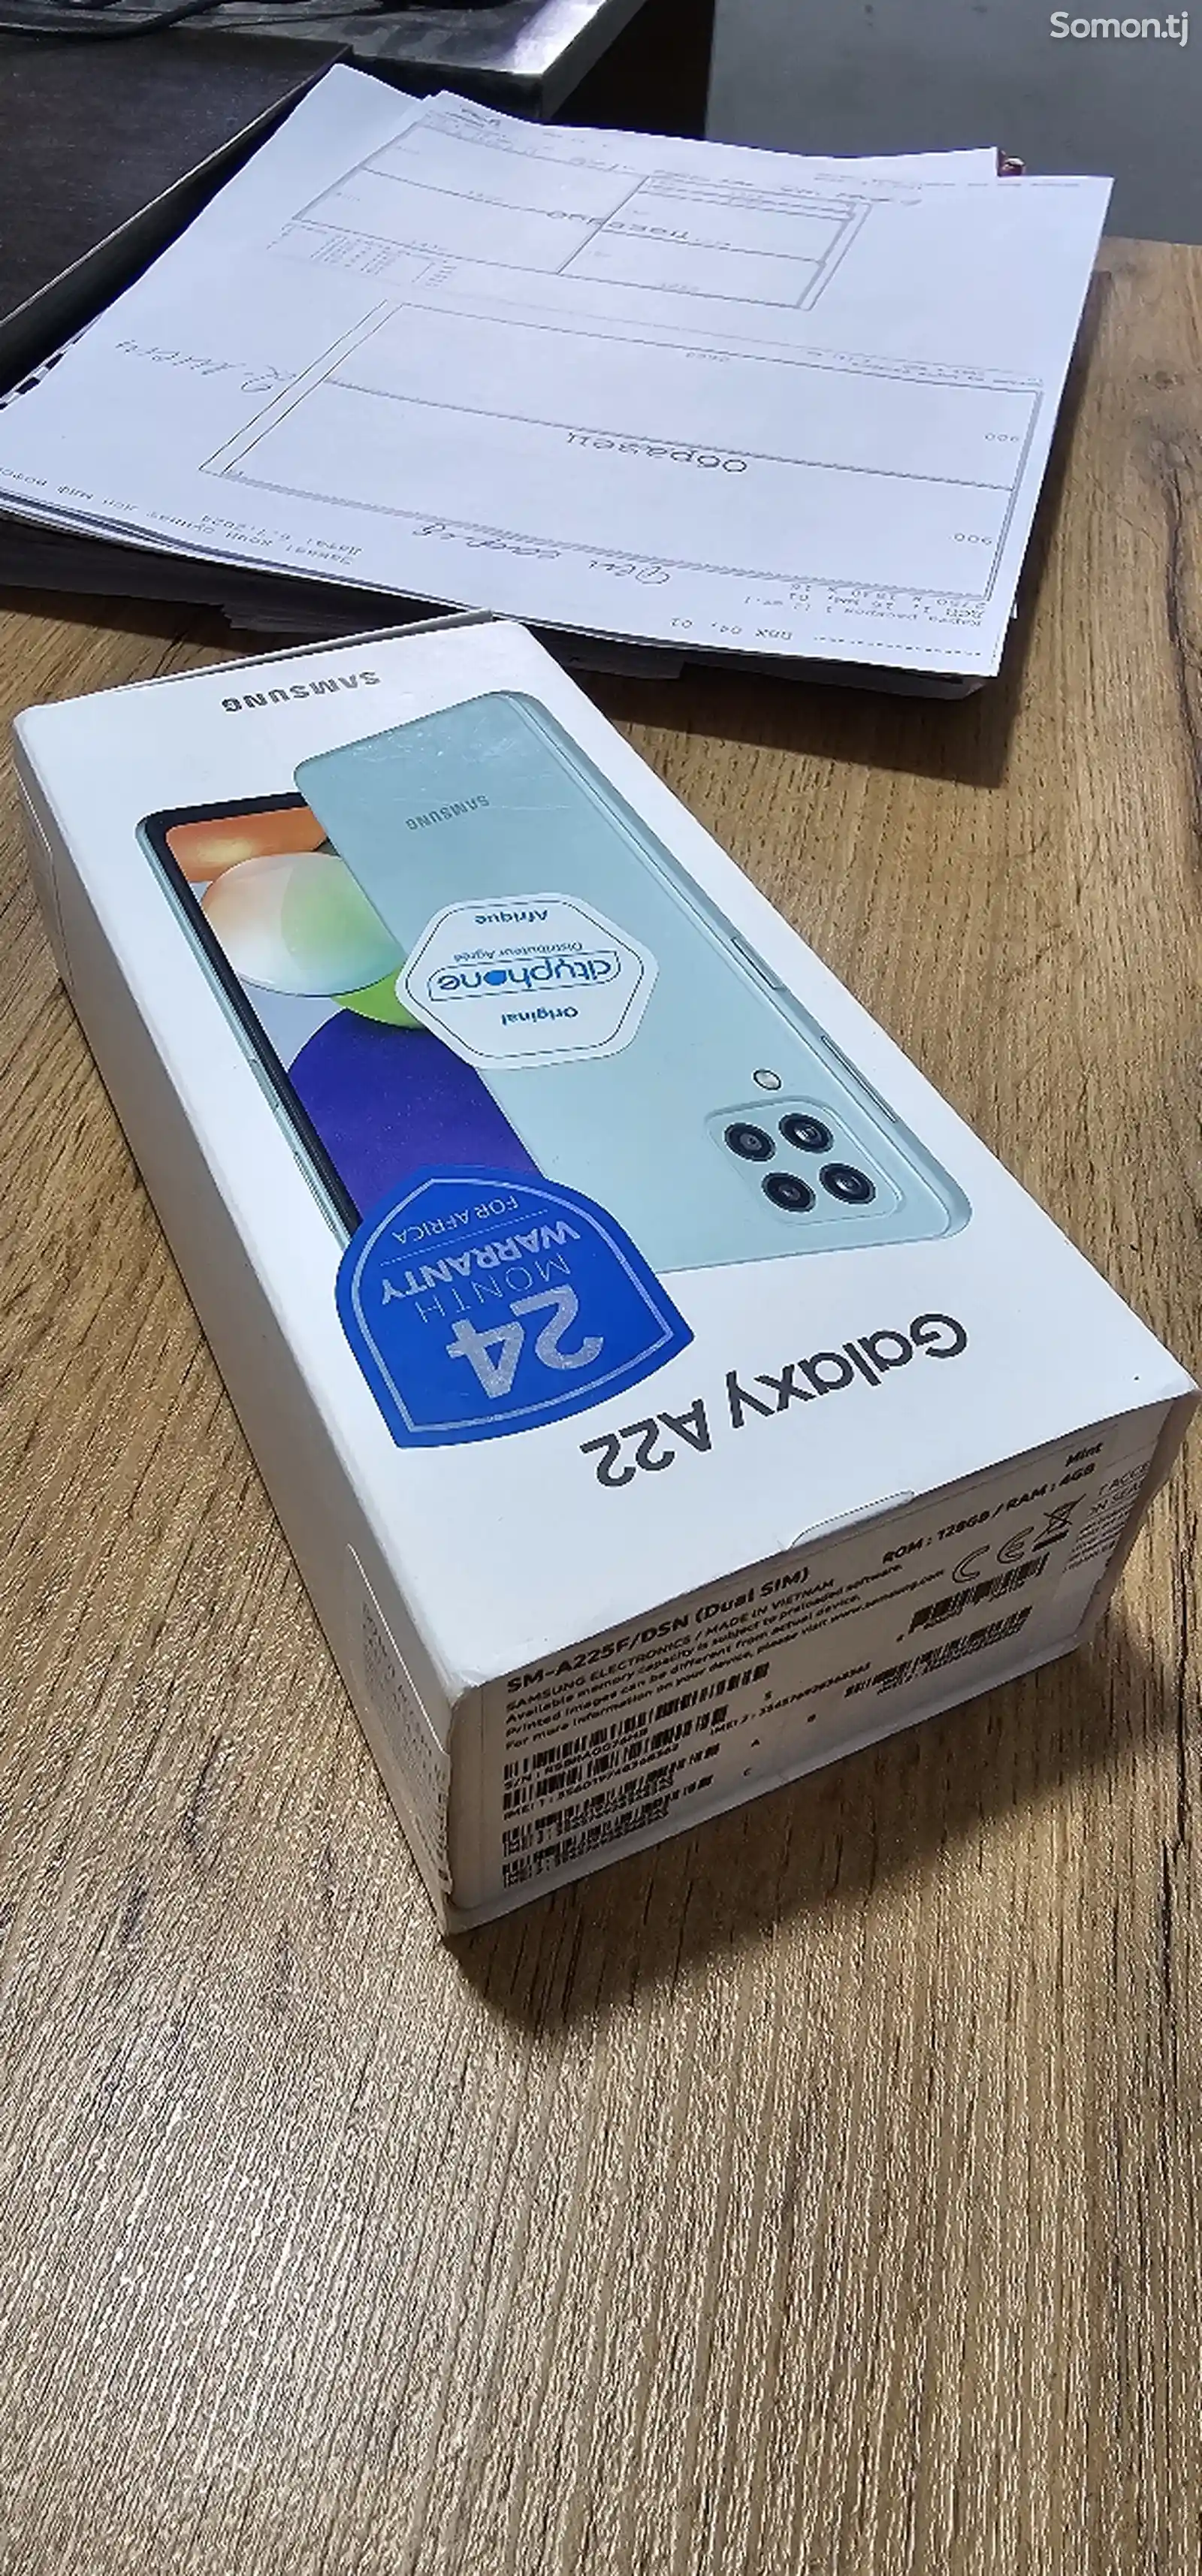 Samsung Galaxy A22-1